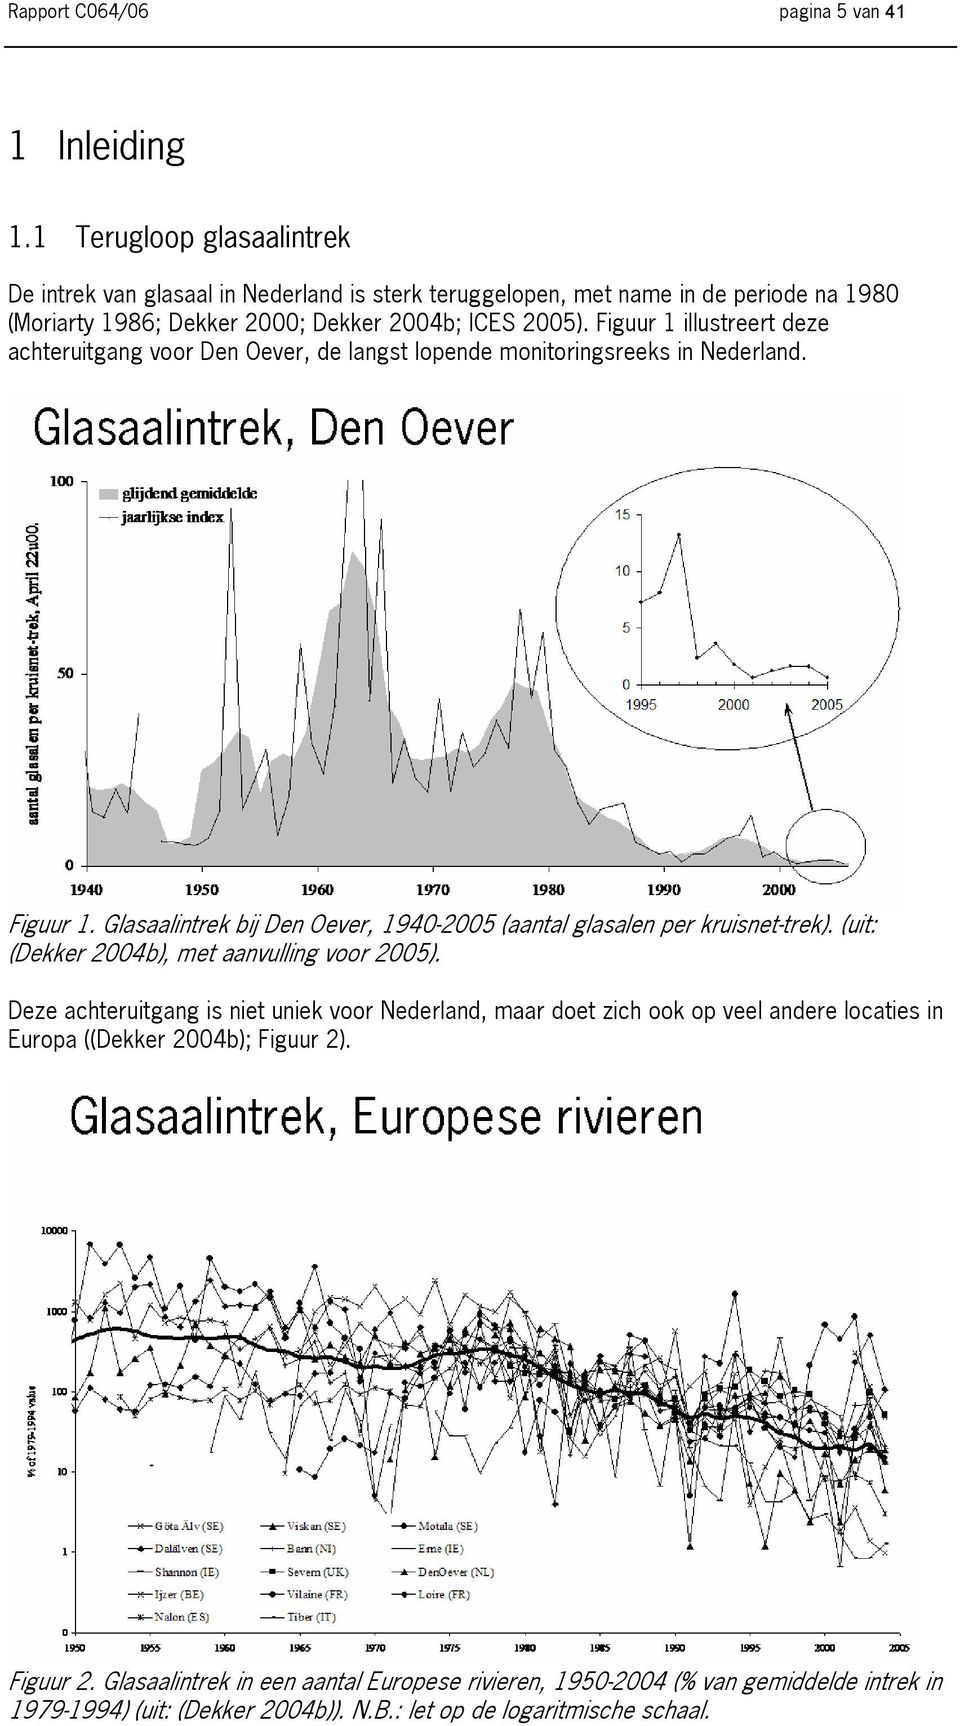 Figuur 1 illustreert deze achteruitgang voor Den Oever, de langst lopende monitoringsreeks in Nederland. Figuur 1.